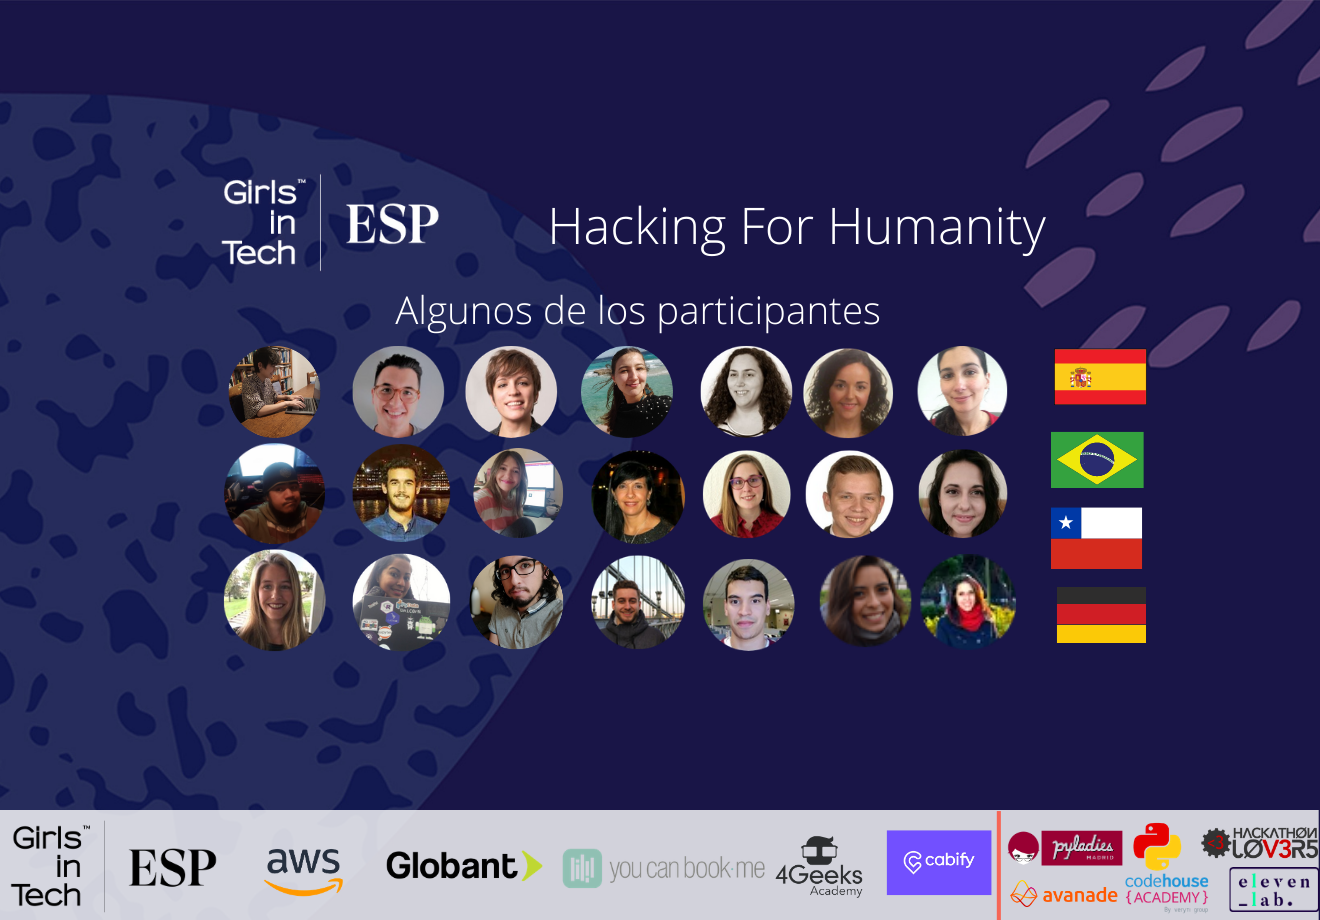 2da edición del Hacking For Humanity de Girls in Tech Spain